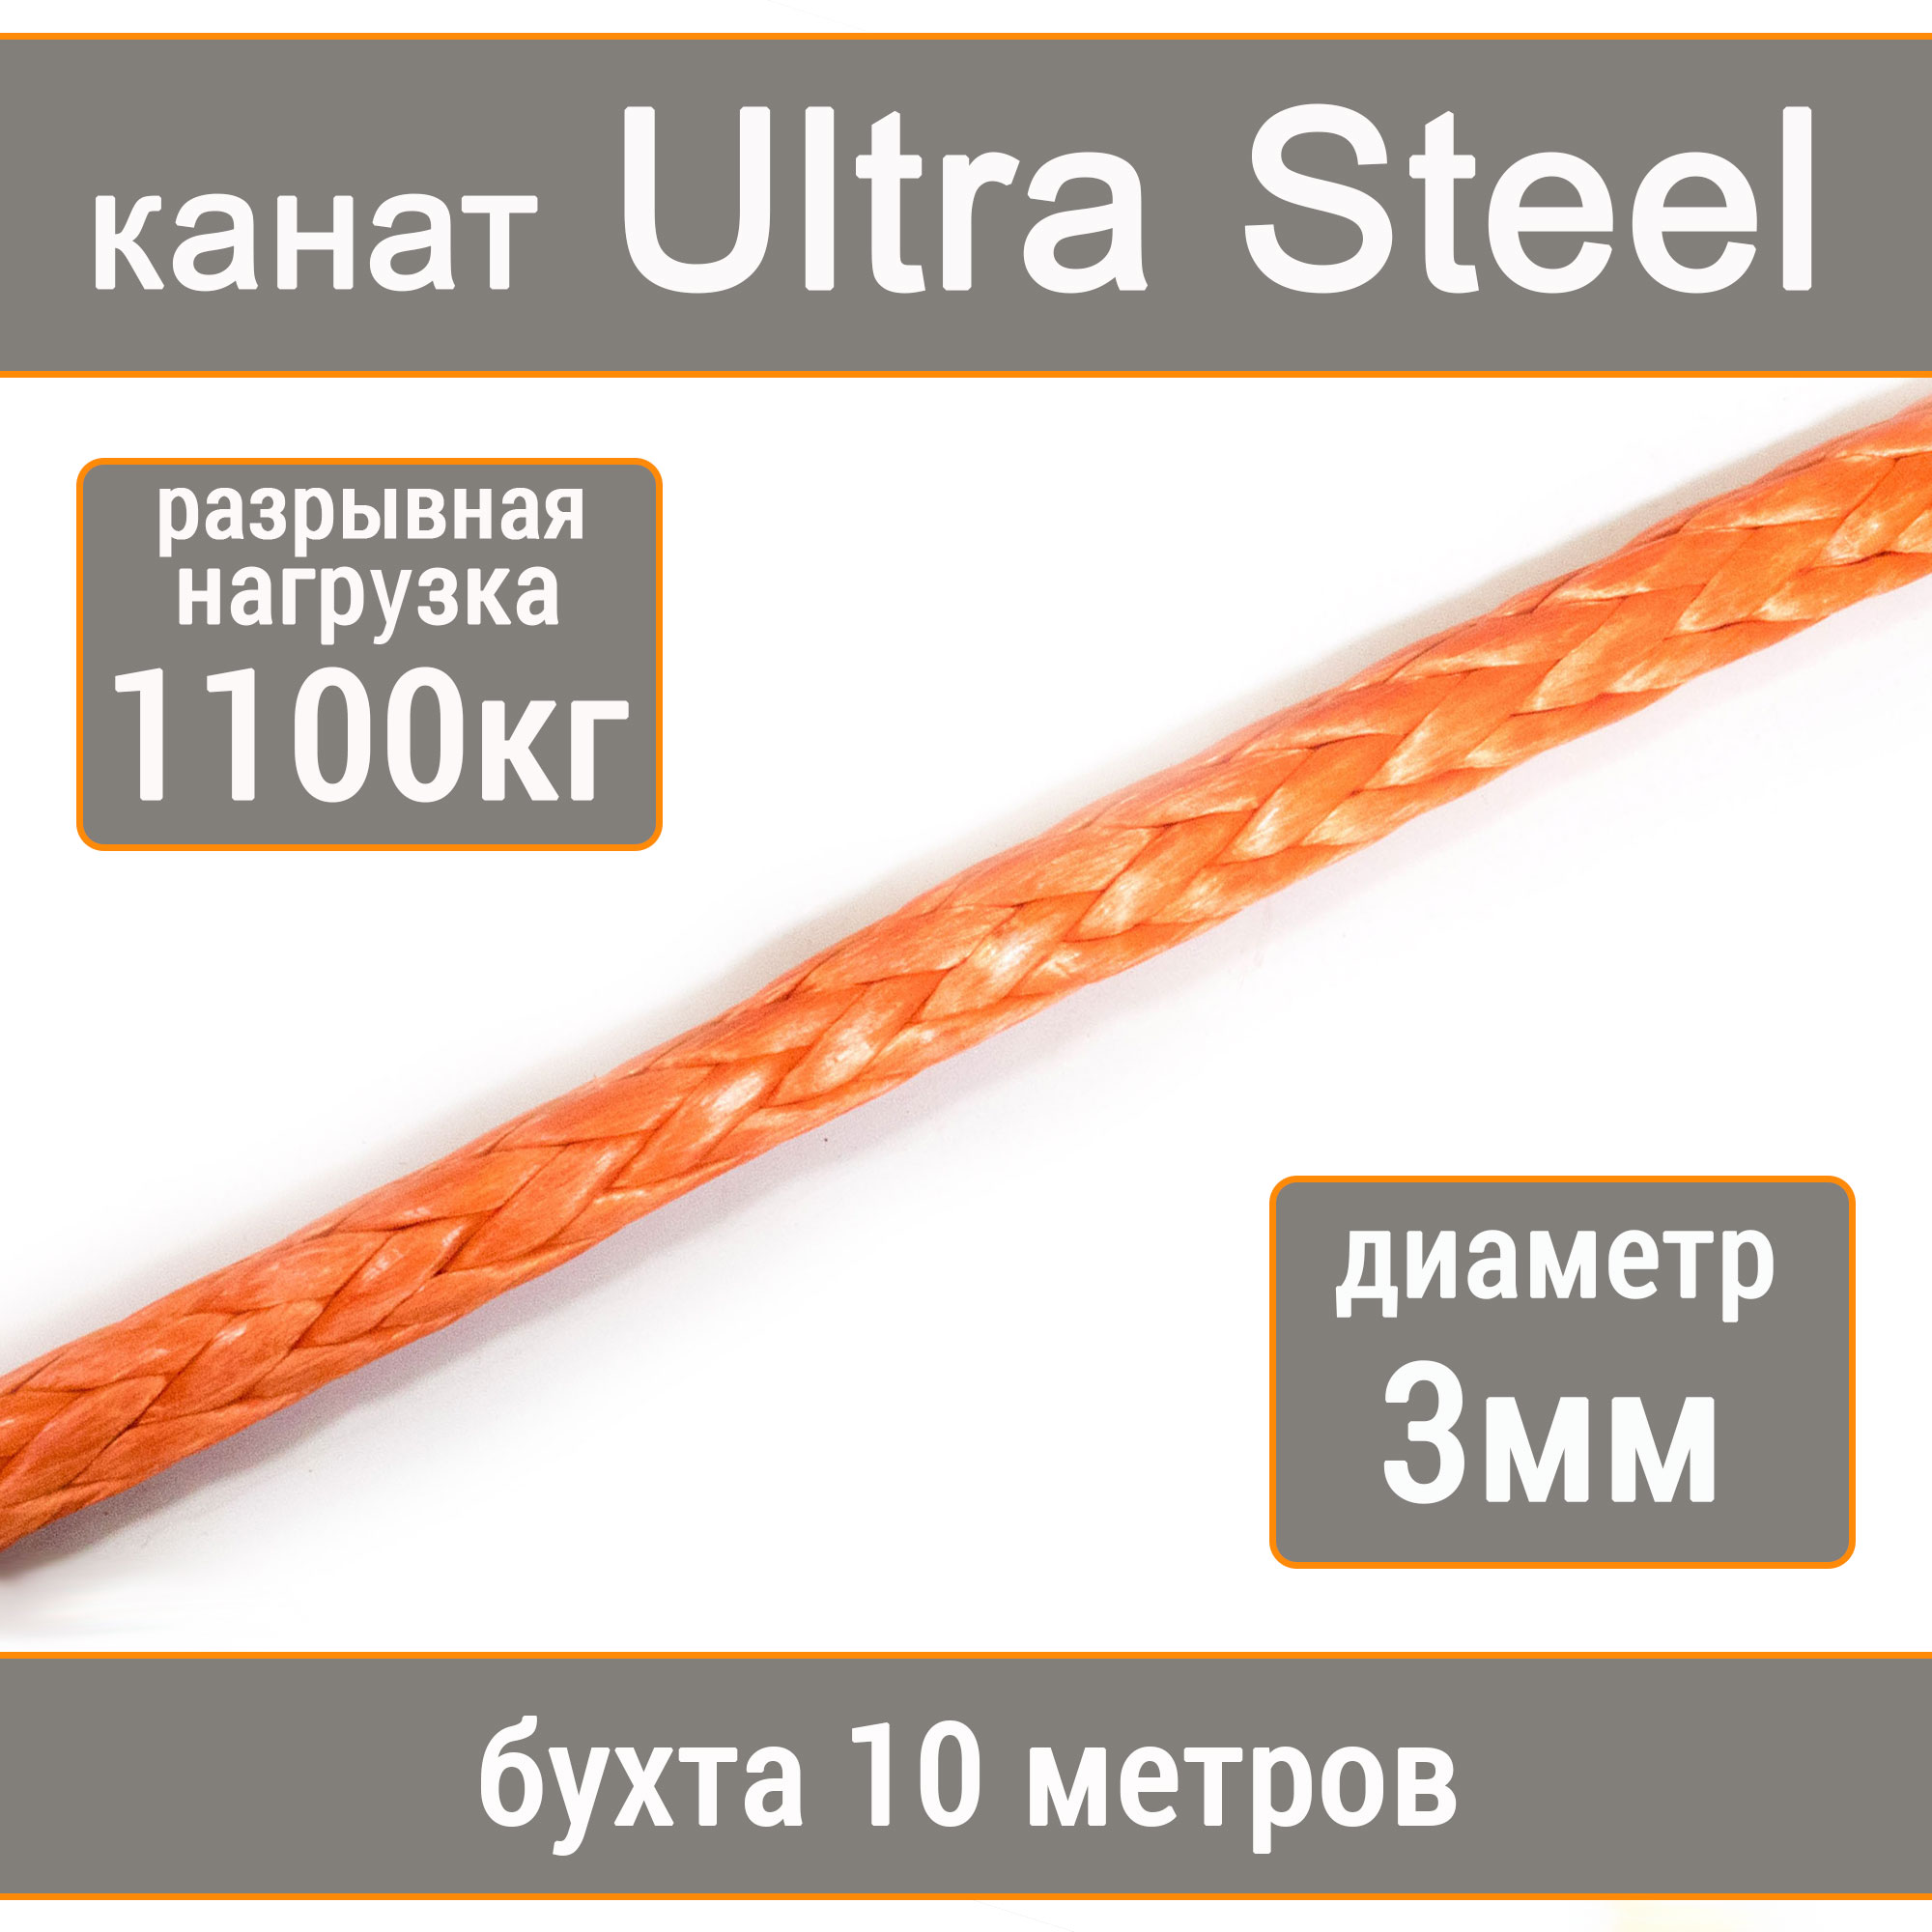 Высокопрочный синтетический канат UTX Ultra Steel 3мм р.н.1100кг, 007654321-103